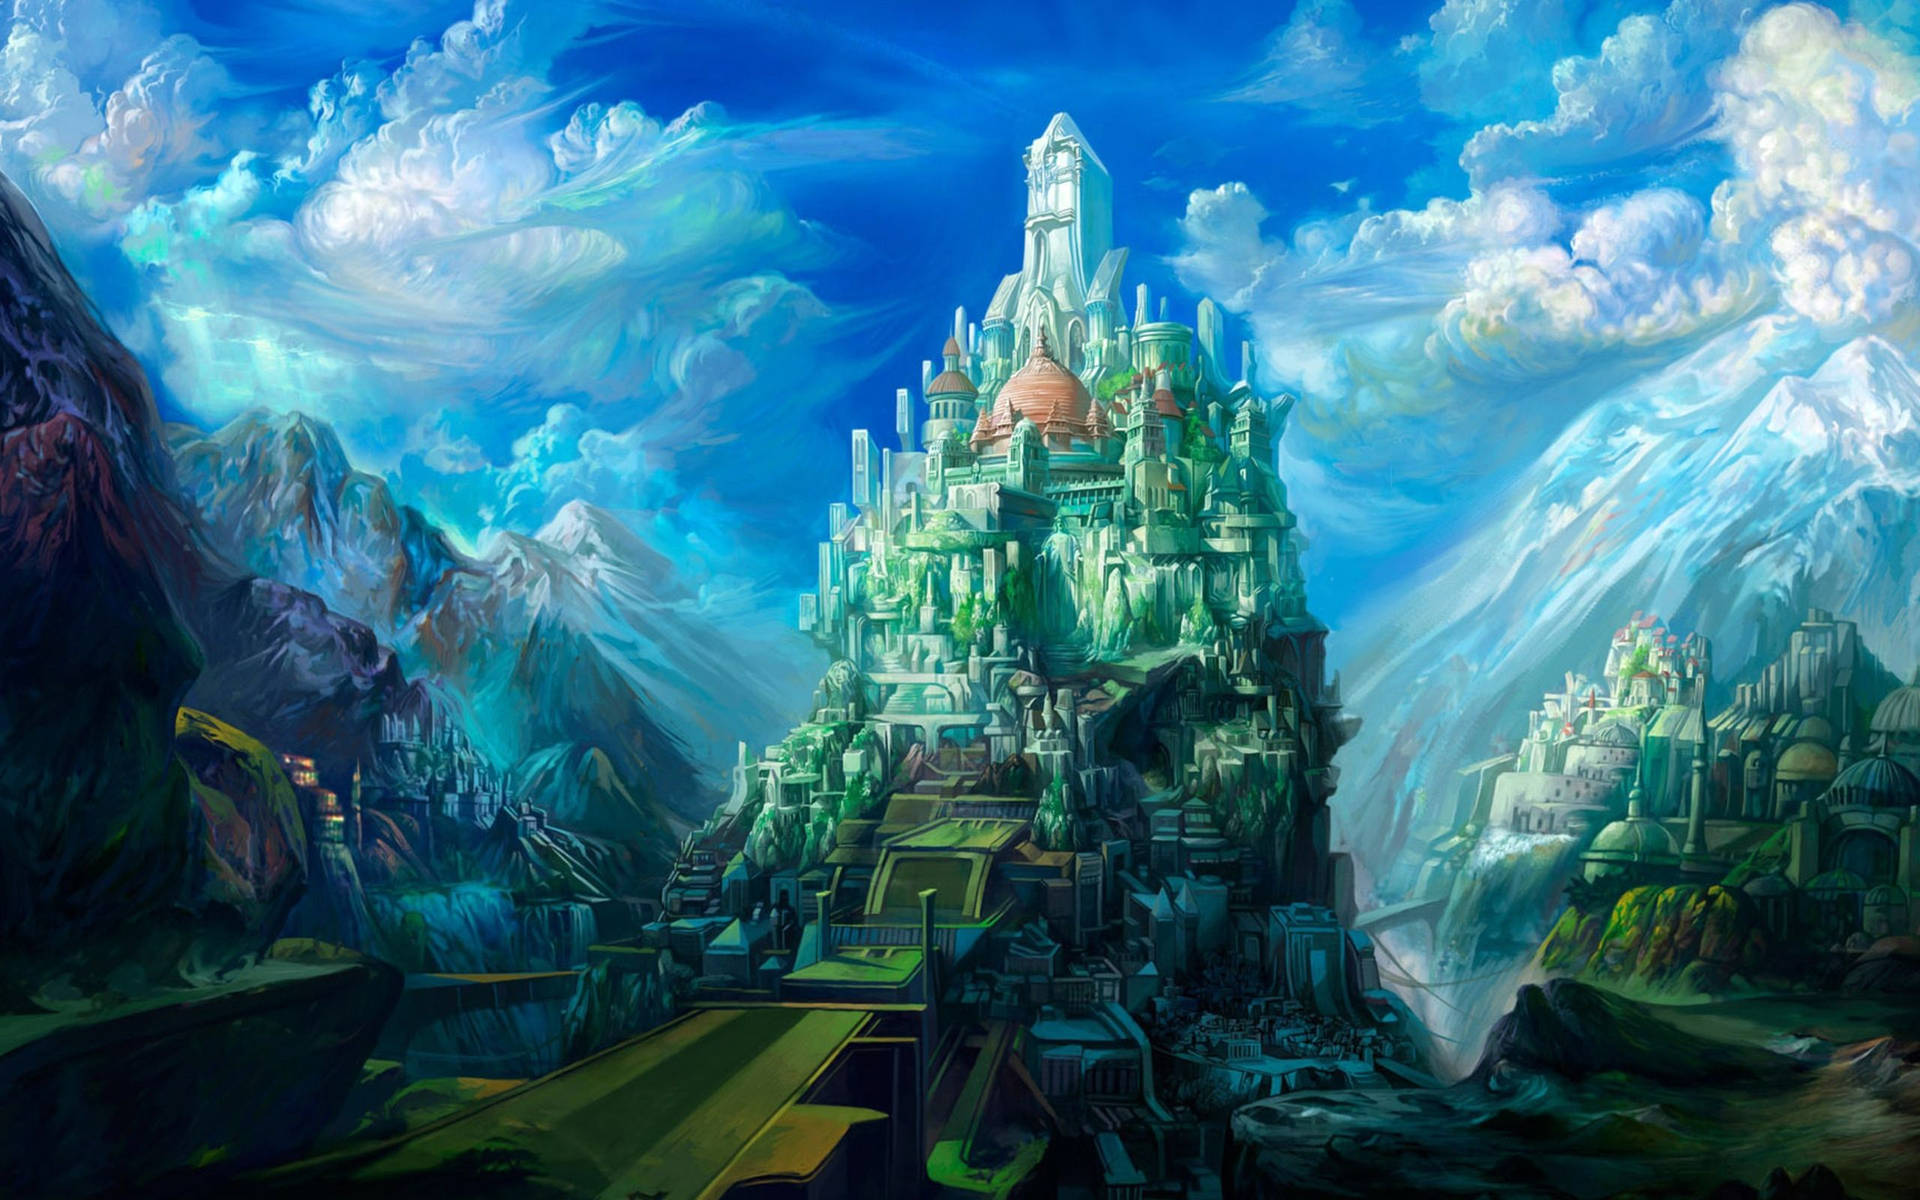 Futuristic World With Frozen Castle